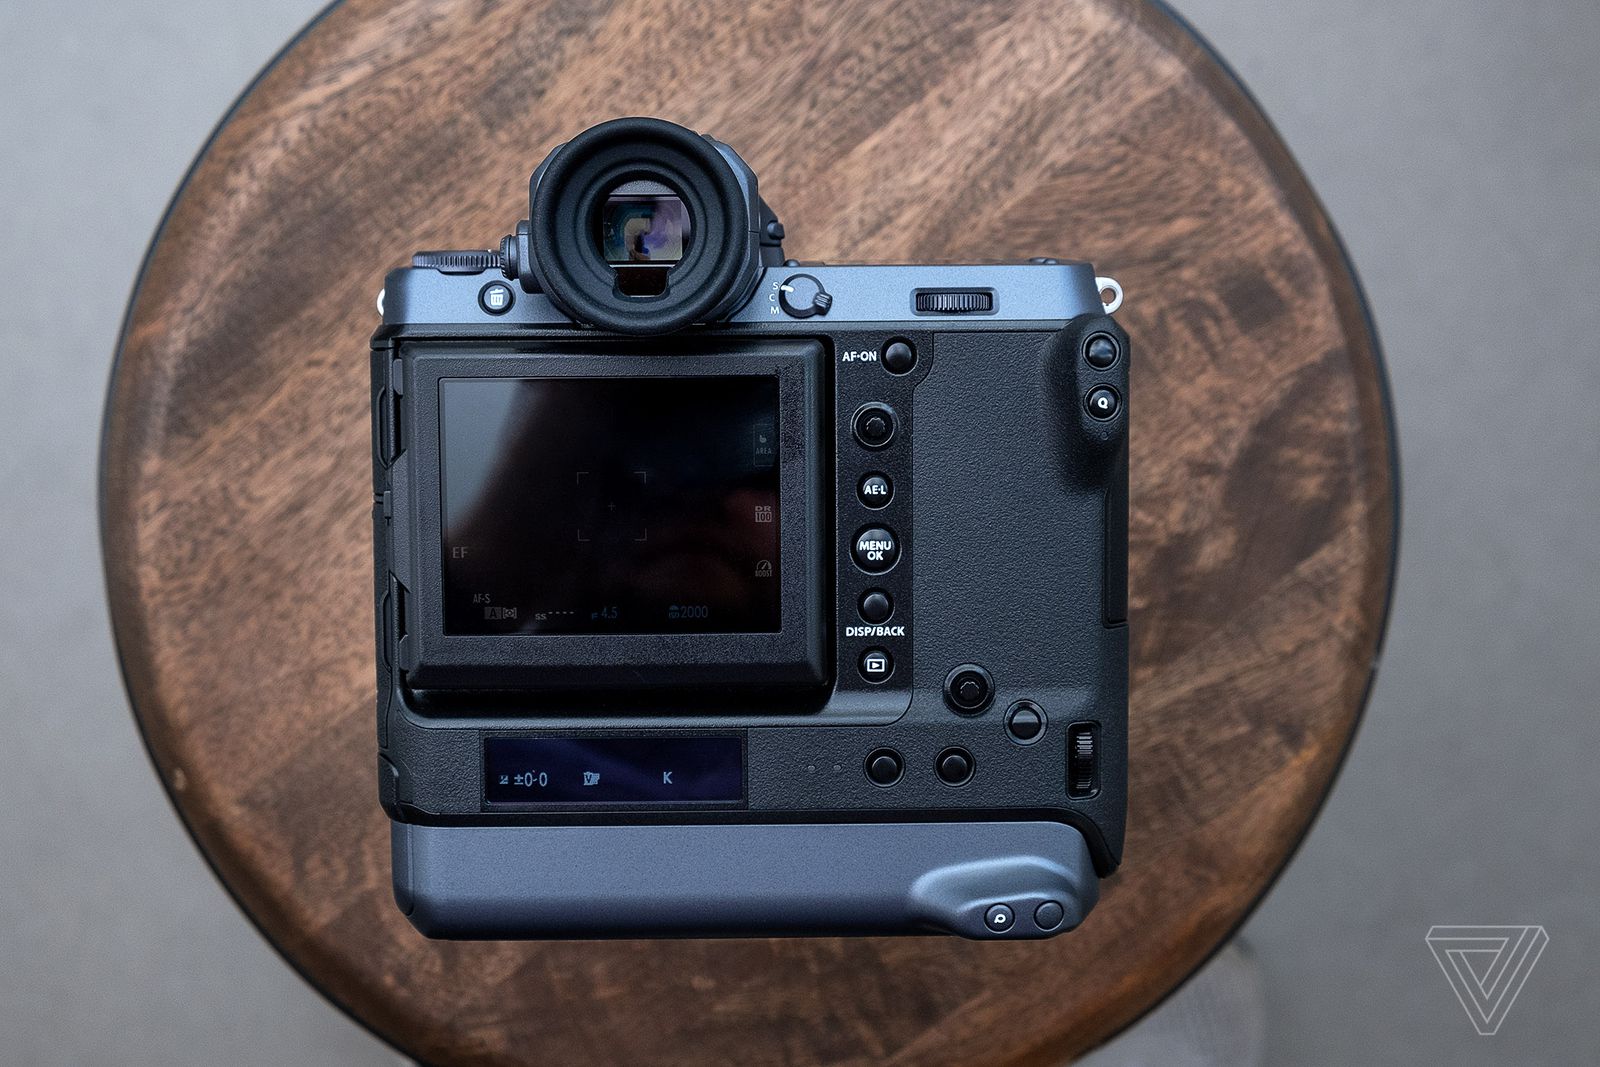 Fujifilm ra mắt máy ảnh GFX 100 với thiết kế hầm hố, cảm biến Medium Format 100MP, giá chỉ 9,999 USD